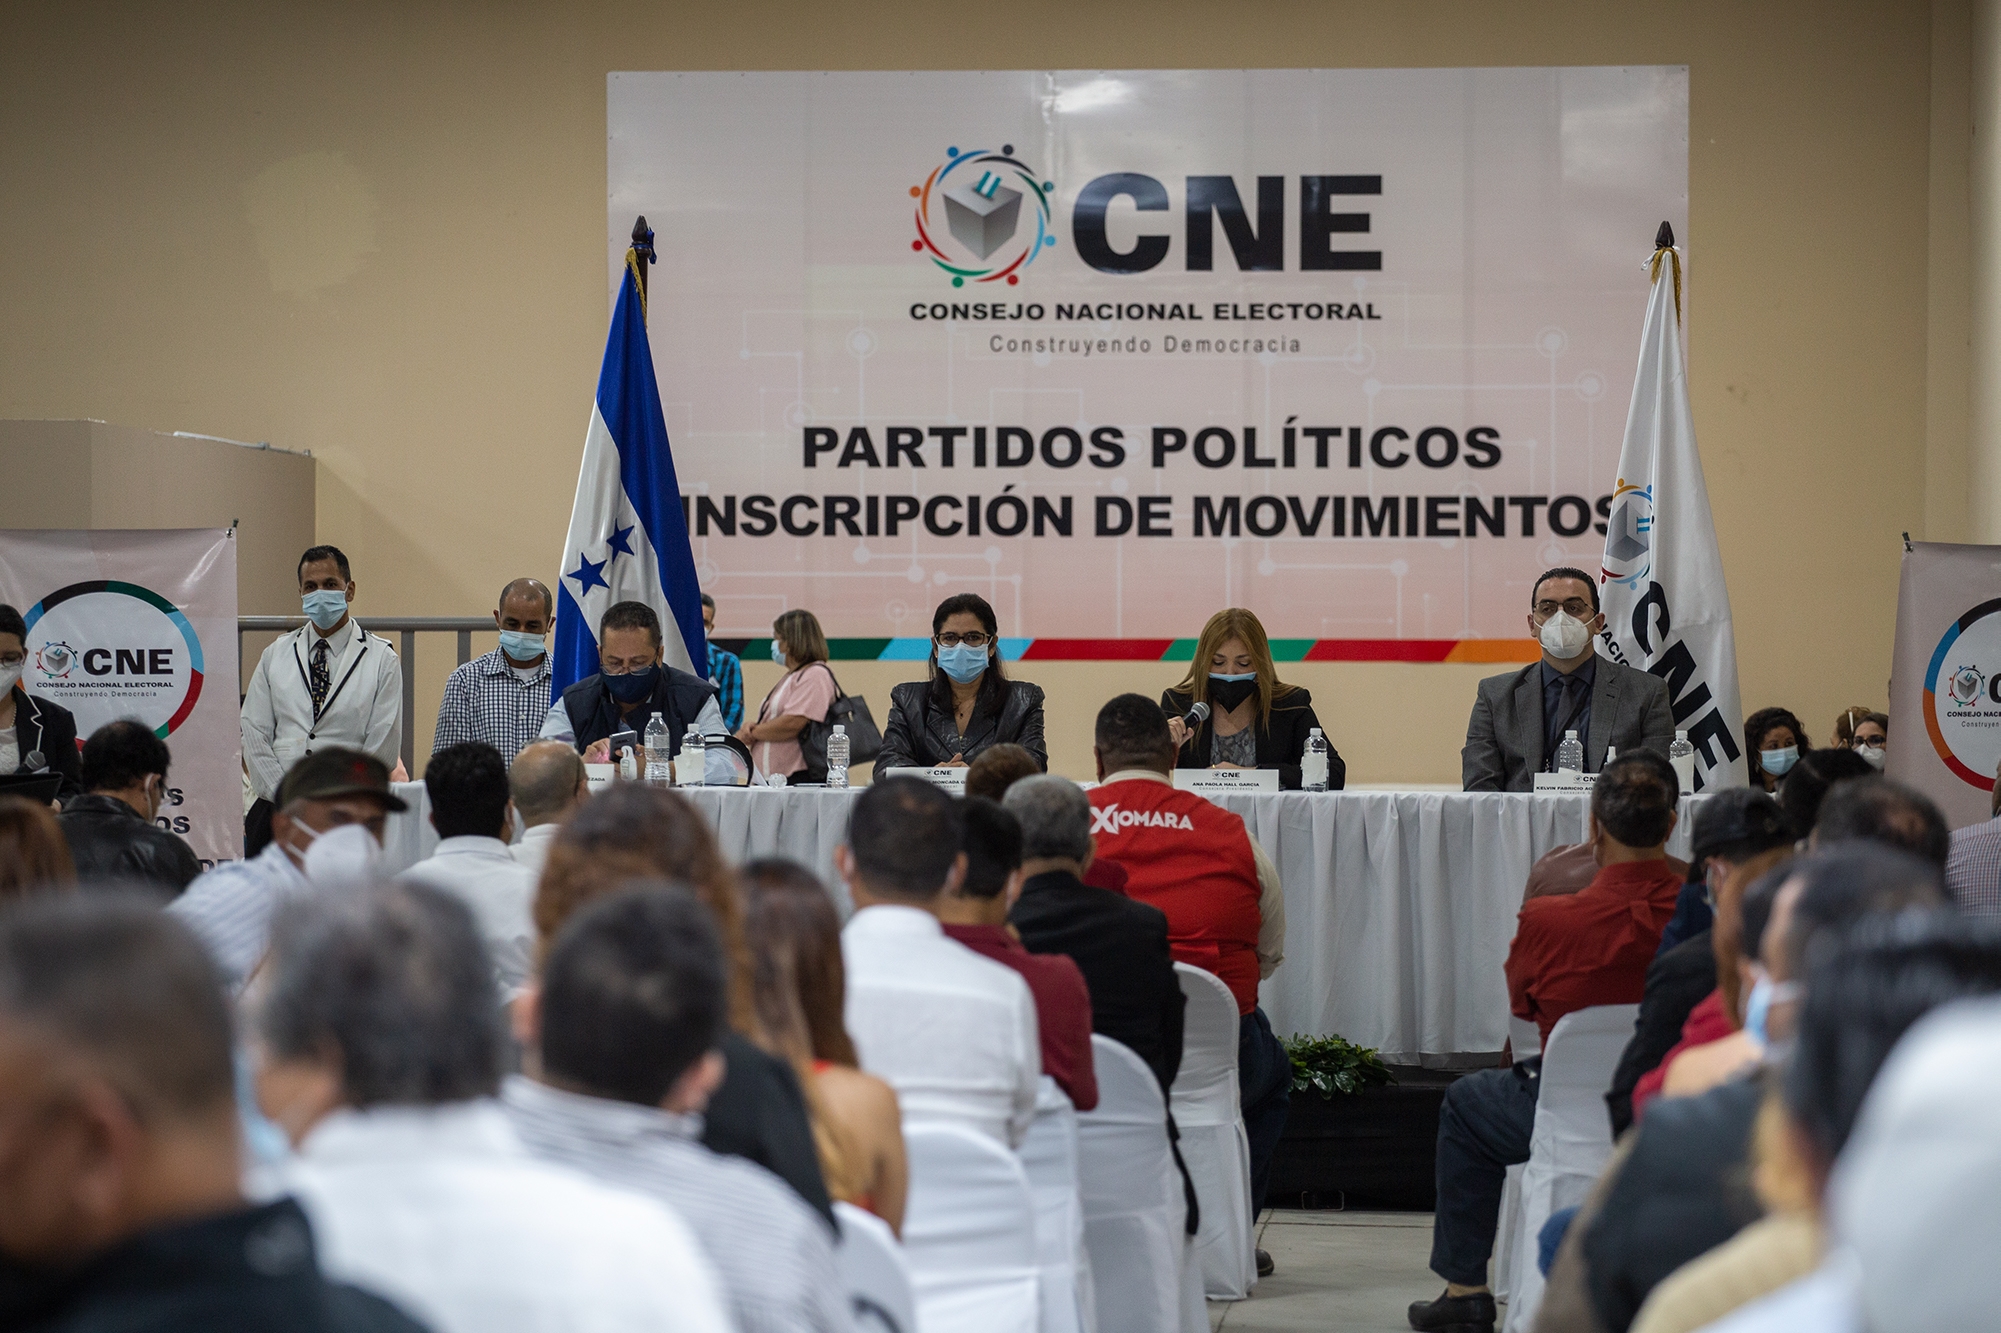 Congreso Nacional Electoral | Partidos políticos | Empresa argentina Grupo MSA | TREP en Honduras | CNE